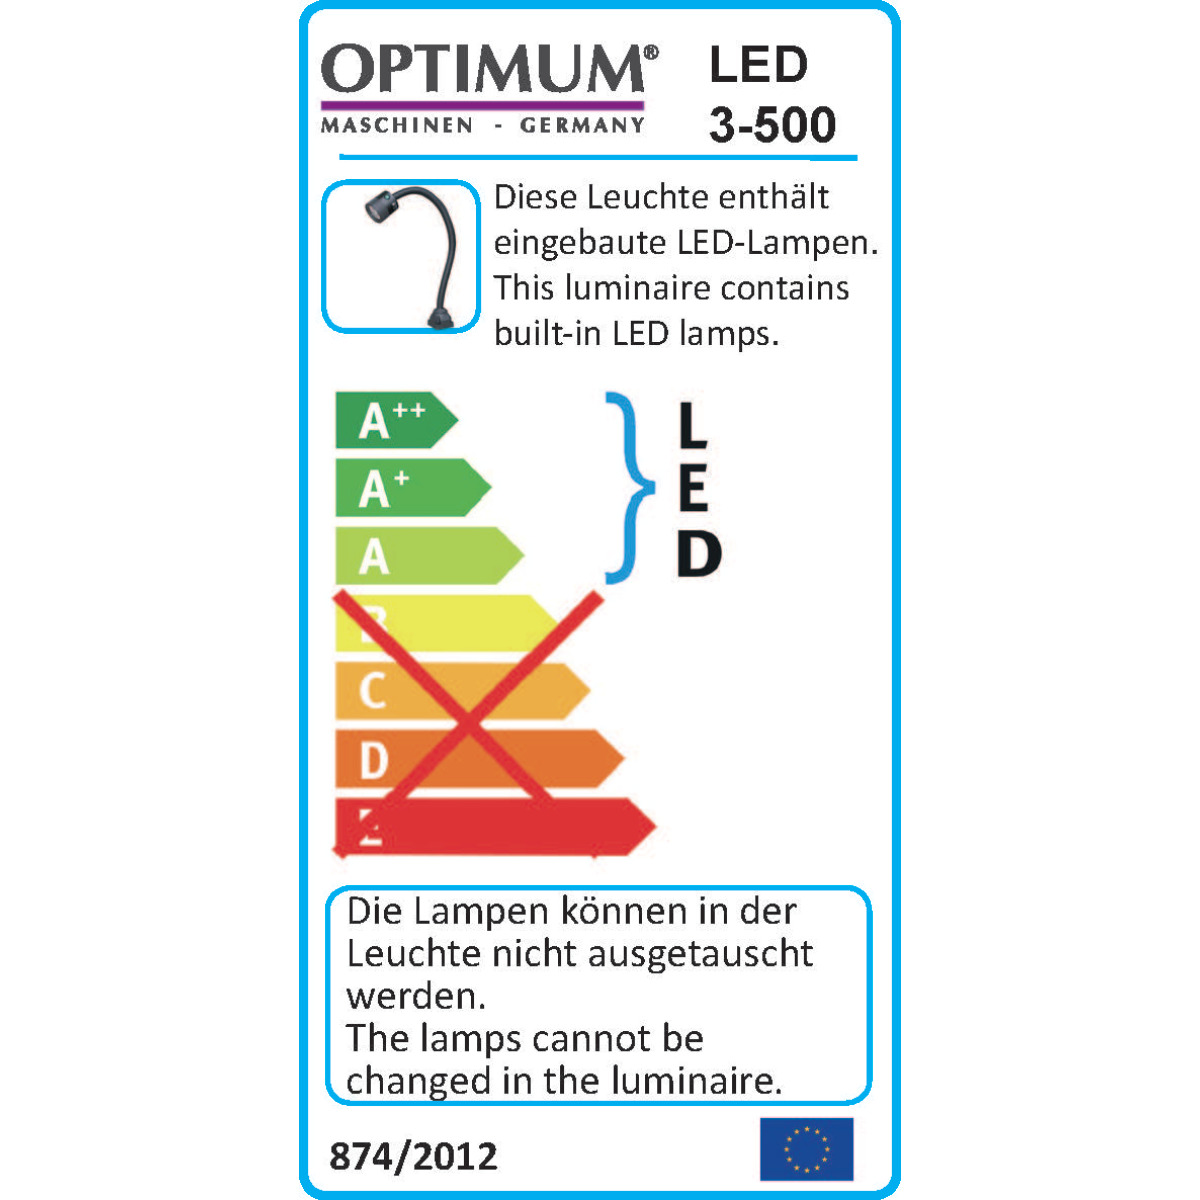 LED-Maschinenlampe LED 3-500